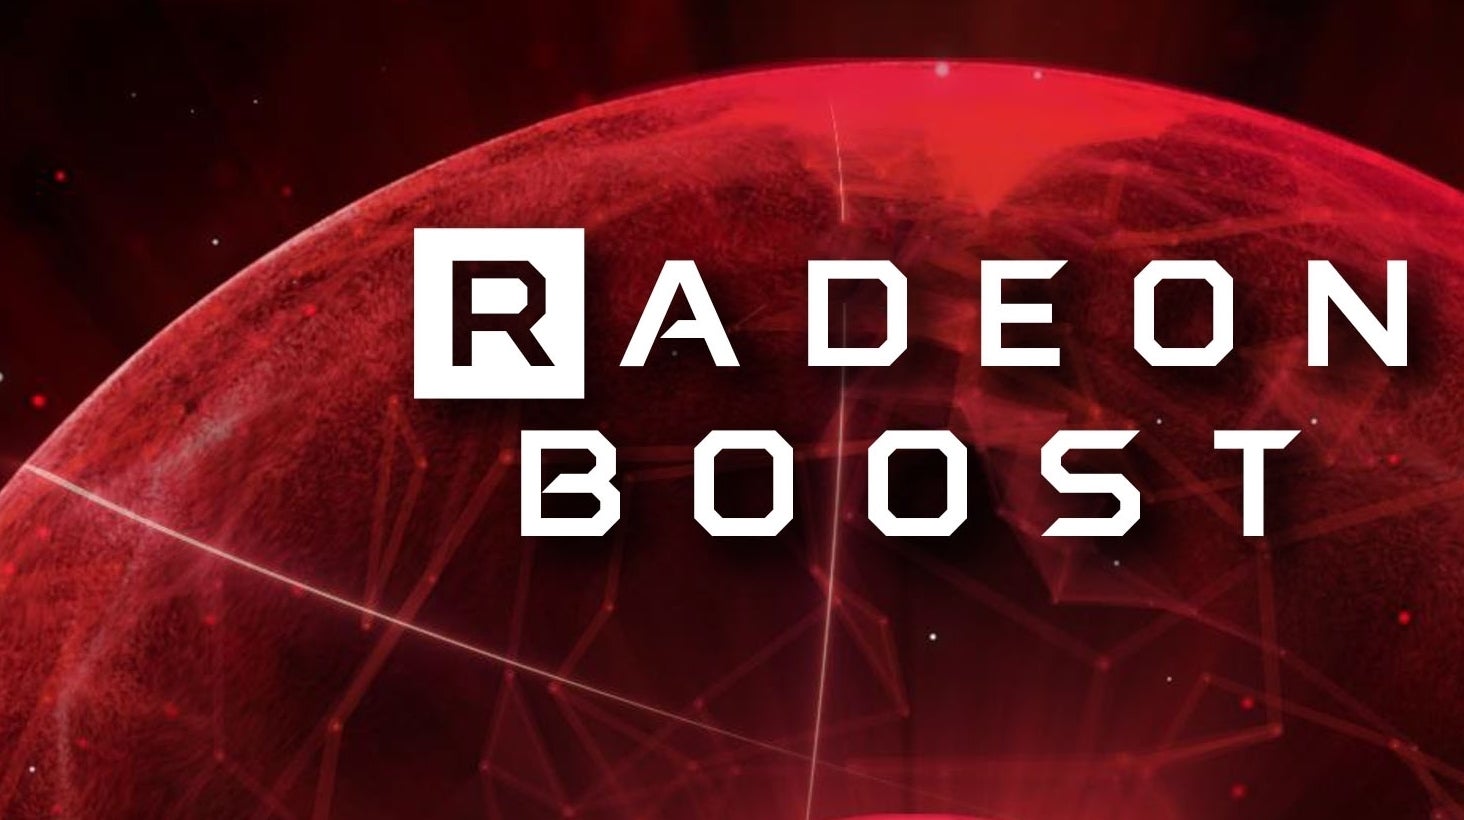 Imagen para Probamos a fondo la tecnología Radeon Boost